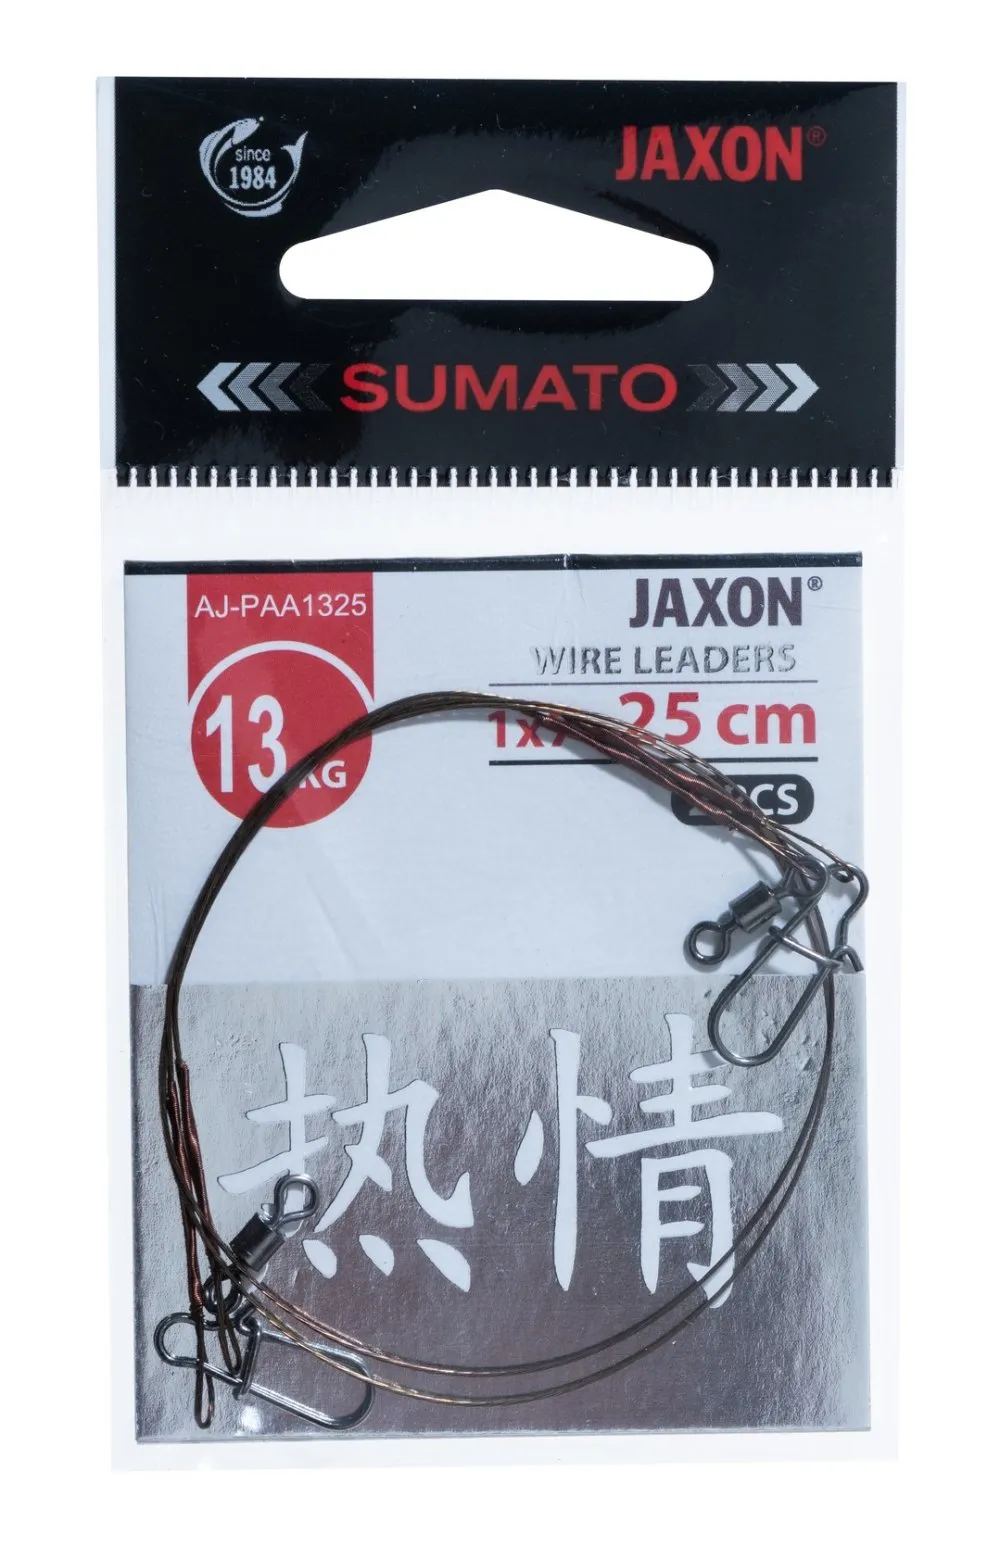 JAXON SUMATO WIRE LEADERS 6kg 30cm